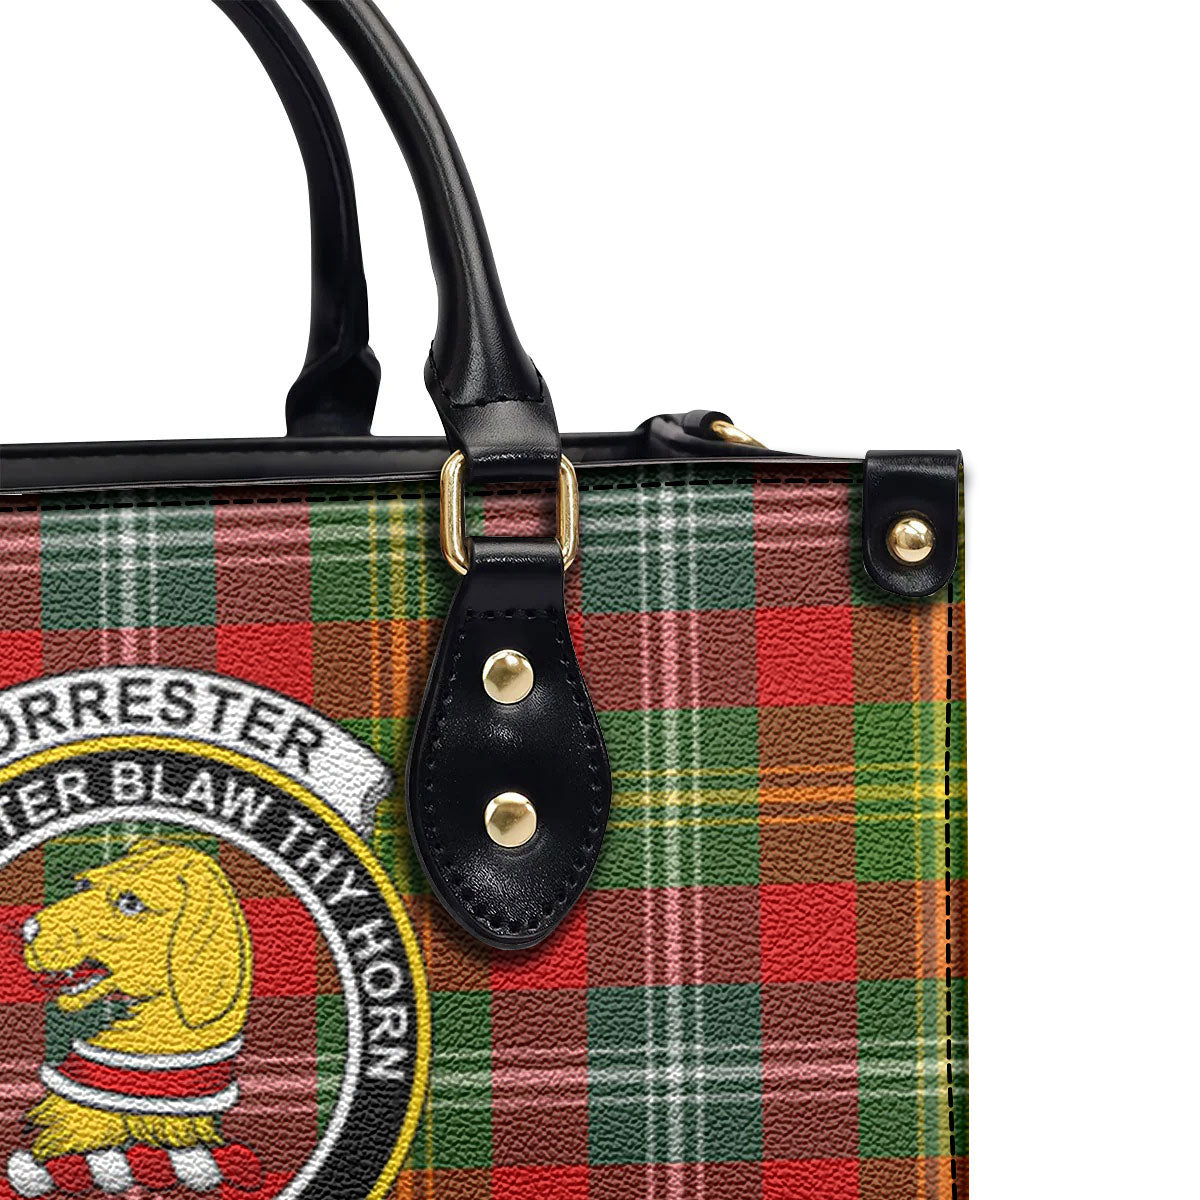 Forrester Tartan Crest Leather Handbag